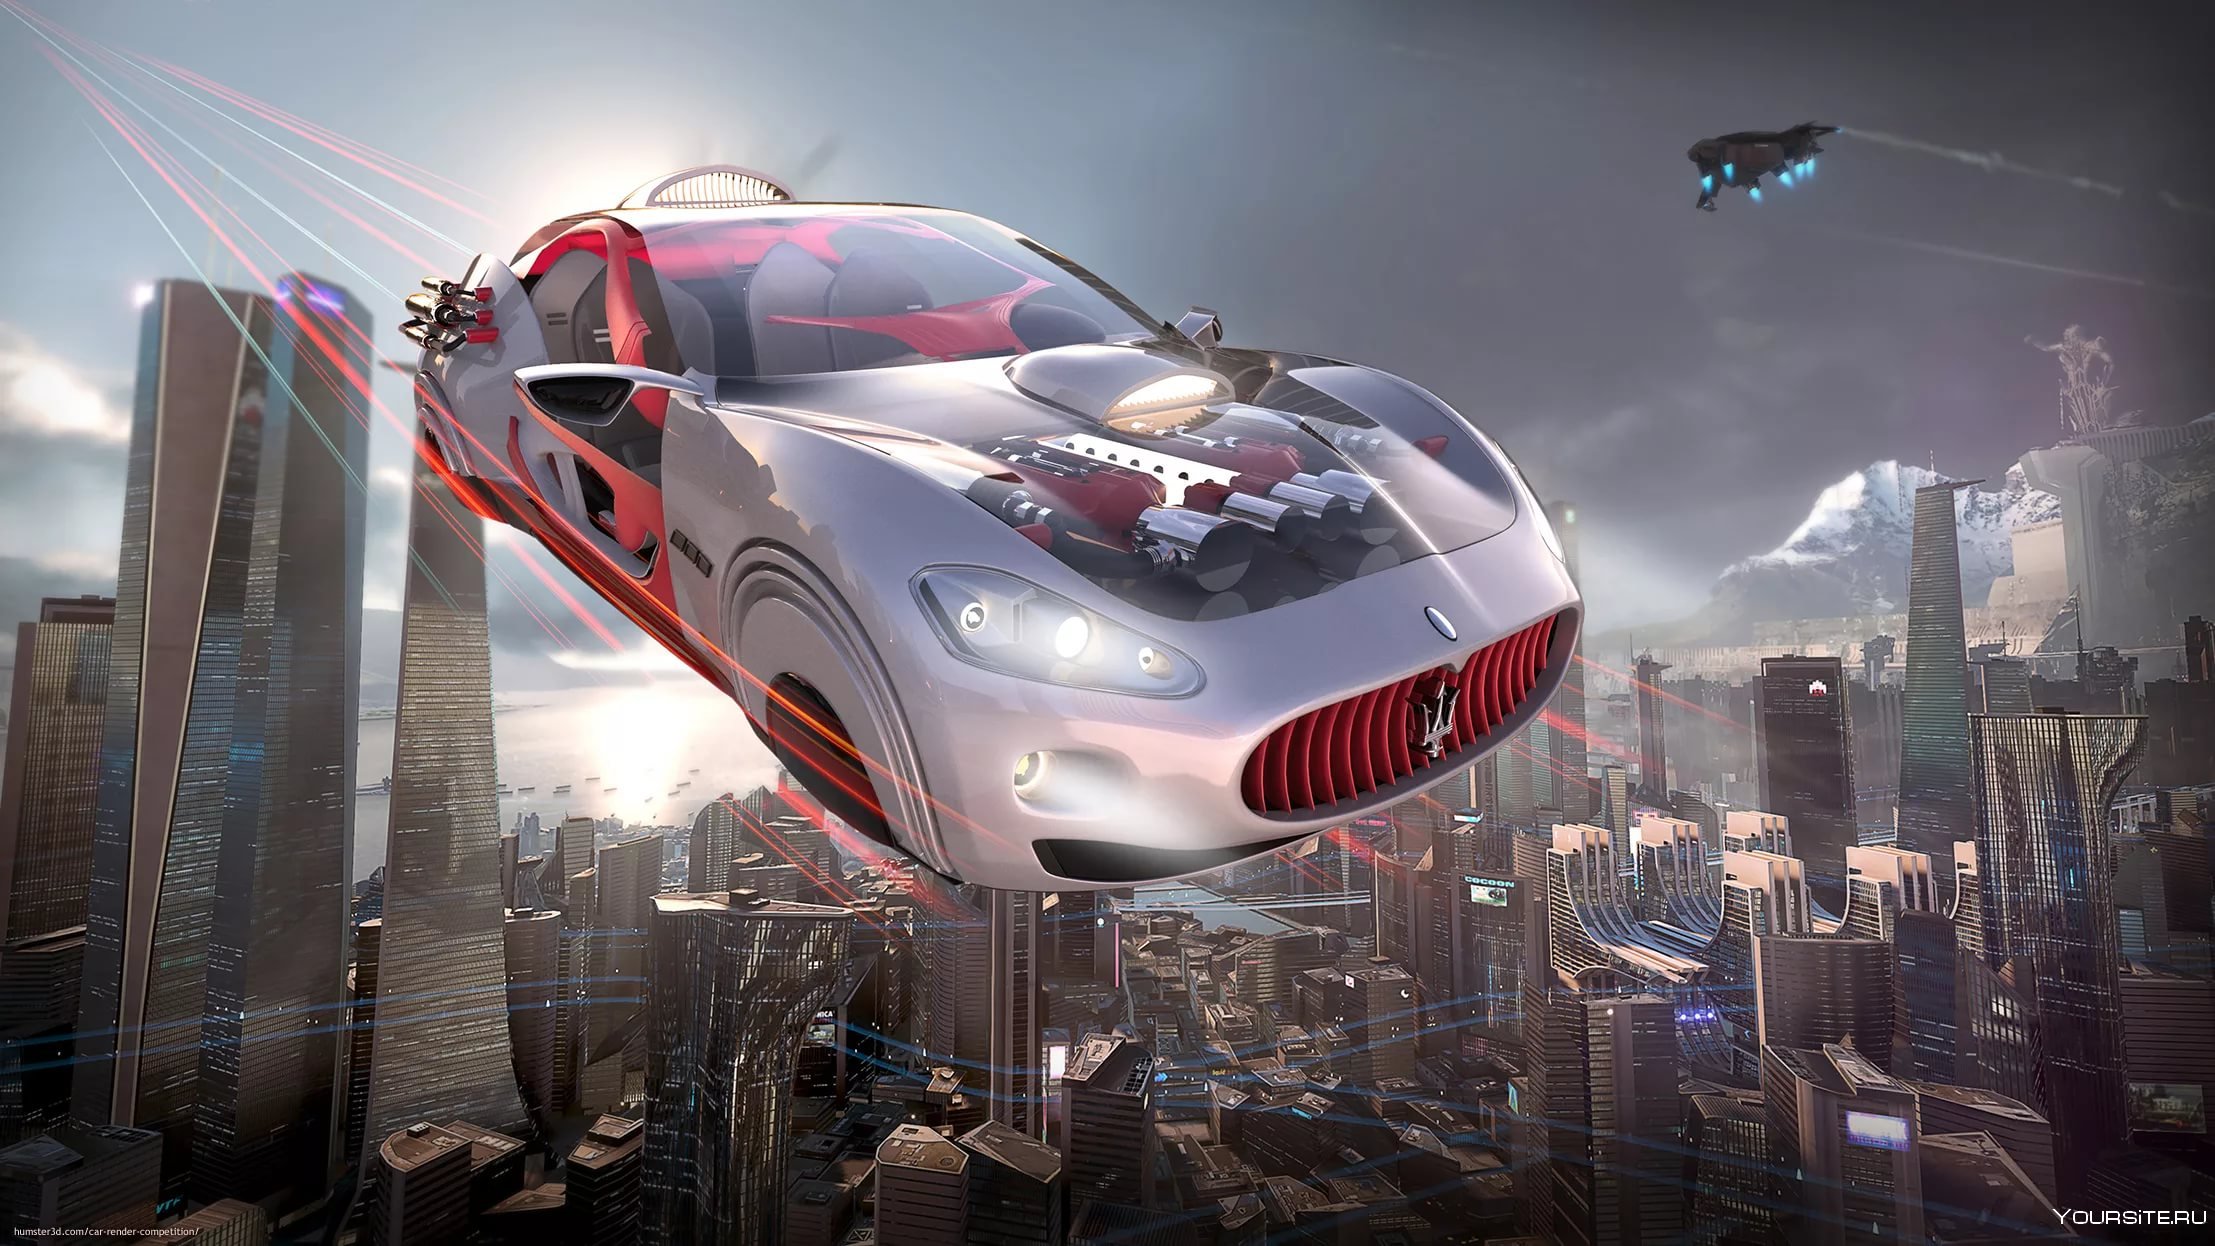 Последняя версия future. Летающая машина. Летающие машины будущего. Летающие машины в будущем. Летающий автомобиль будущего.